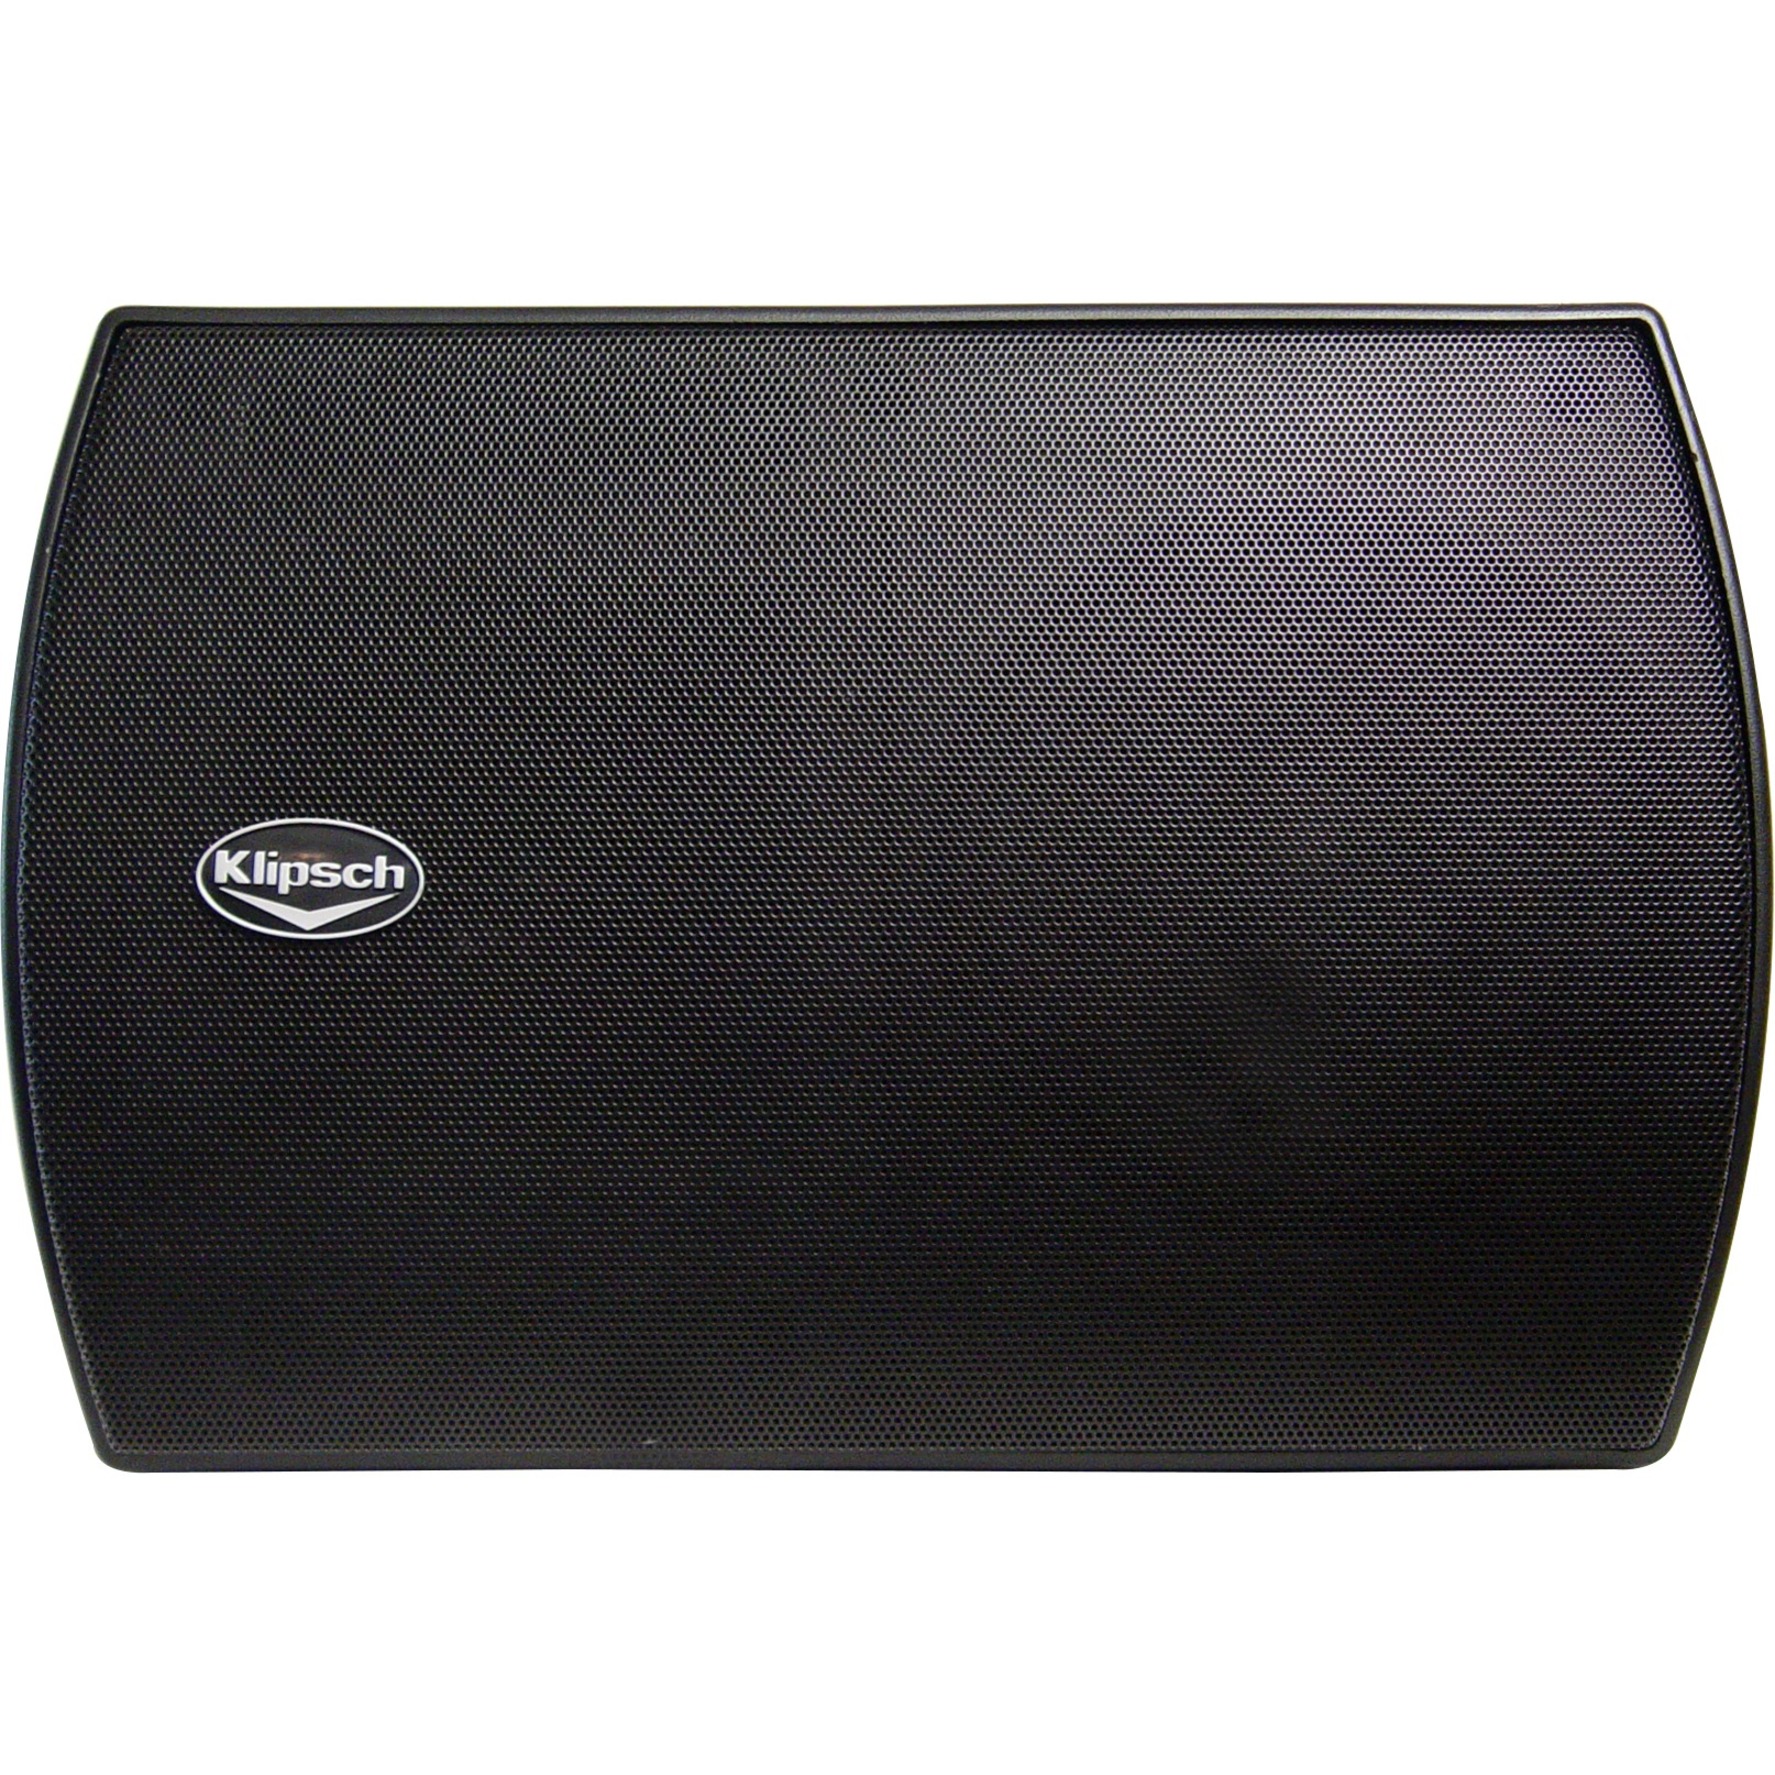 Klipsch CA-525T 2-way Indoor/Outdoor Speaker, 150 W RMS, Black - image 3 of 4